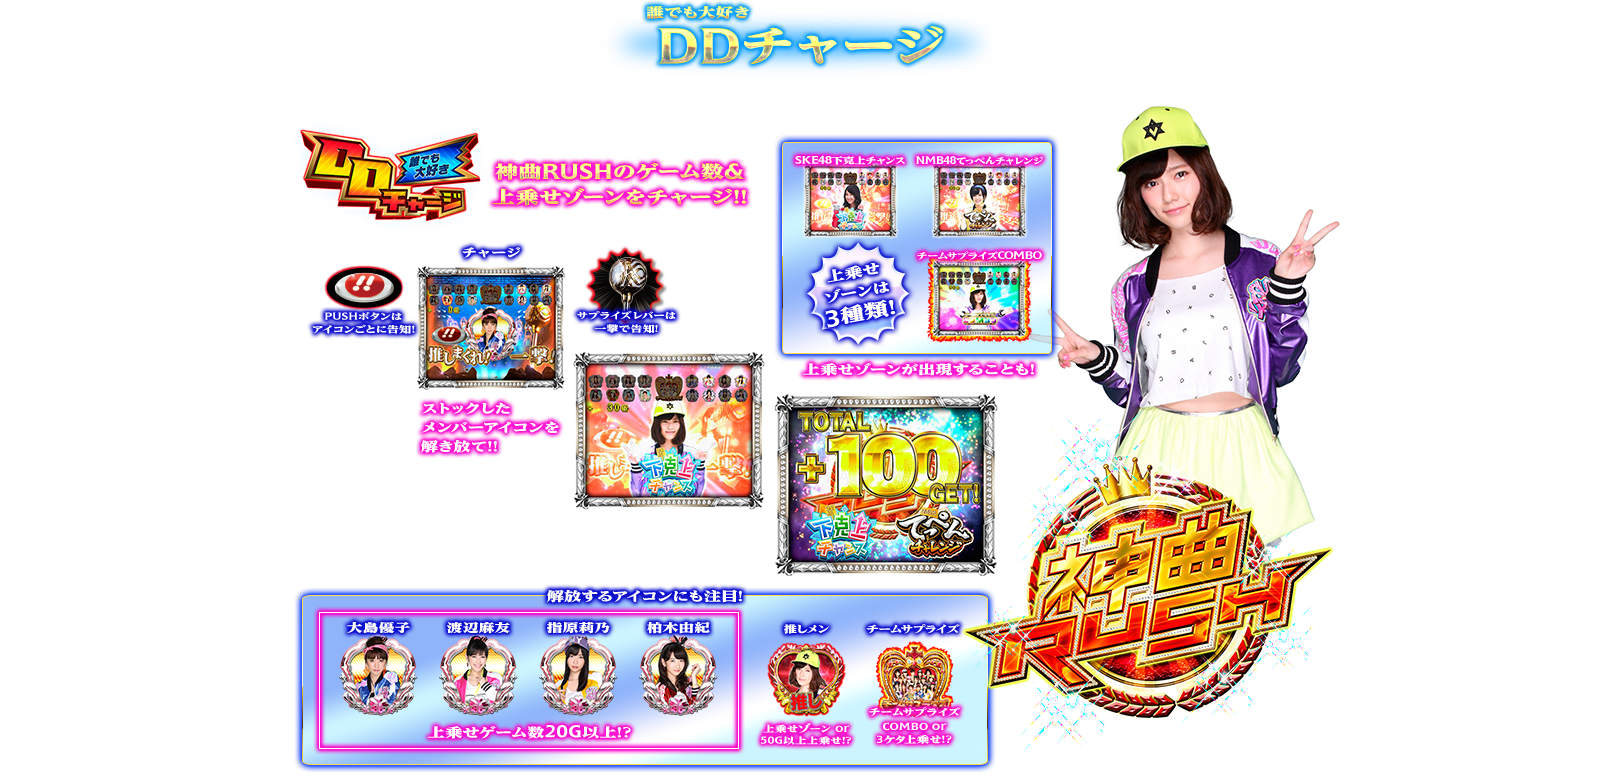 ぱちスロAKB48 バラの儀式の演出紹介。SPECIAL上乗せゾーンのDDチャージです。AKB48ファン、スロット初心者、ヘビーユーザーまで誰もが楽しめるDDスペックで登場!!